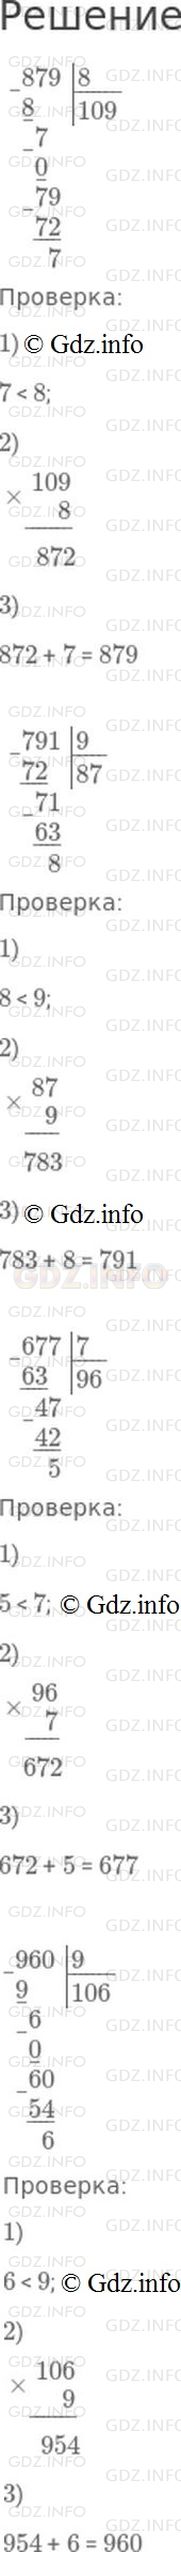 Фото решения 1: Номер №161, Часть 1 из ГДЗ по Математике 4 класс: Моро М.И. г.